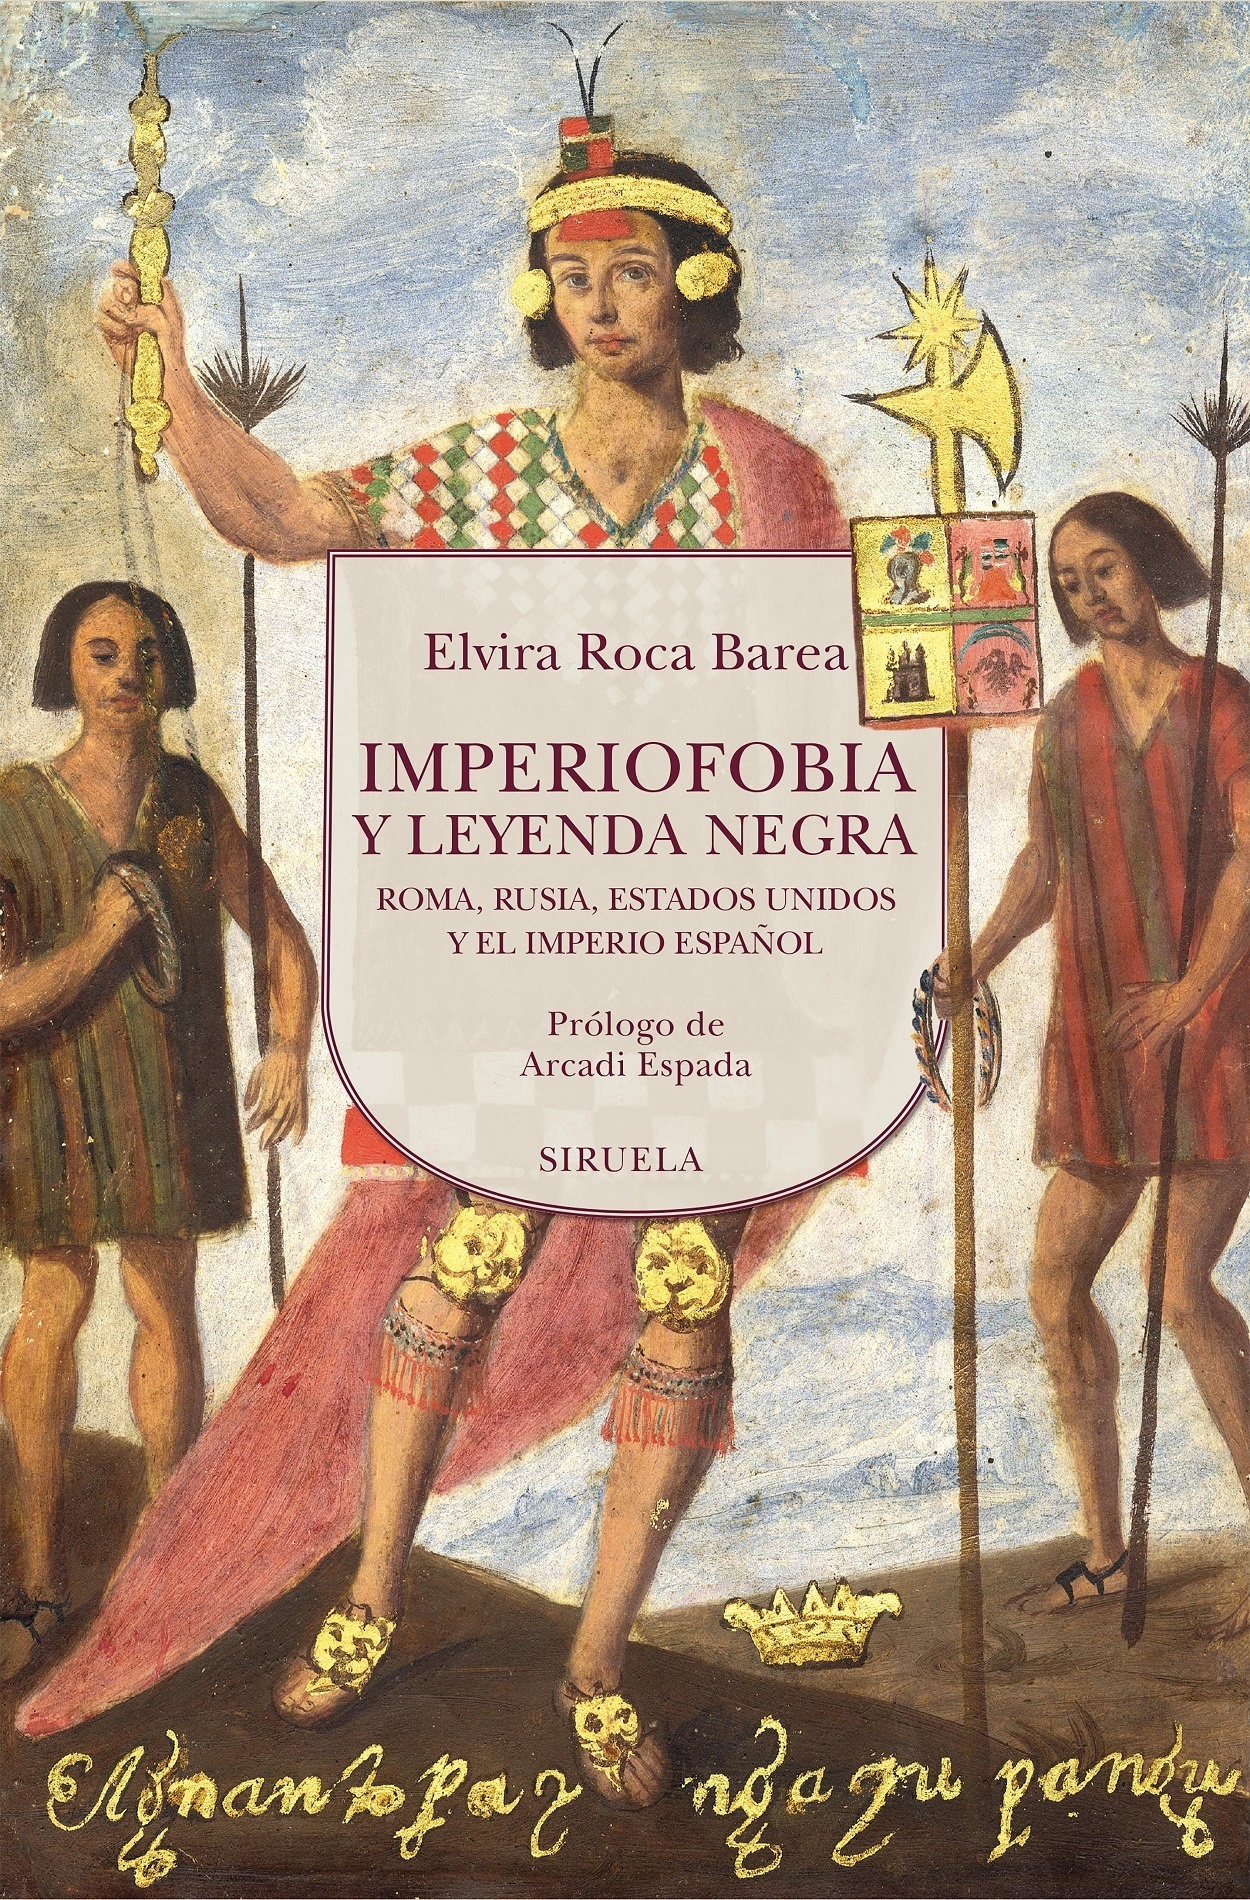 Imperiofobia y leyenda negra "Roma, Rusia, Estados Unidos y el Imperio español"